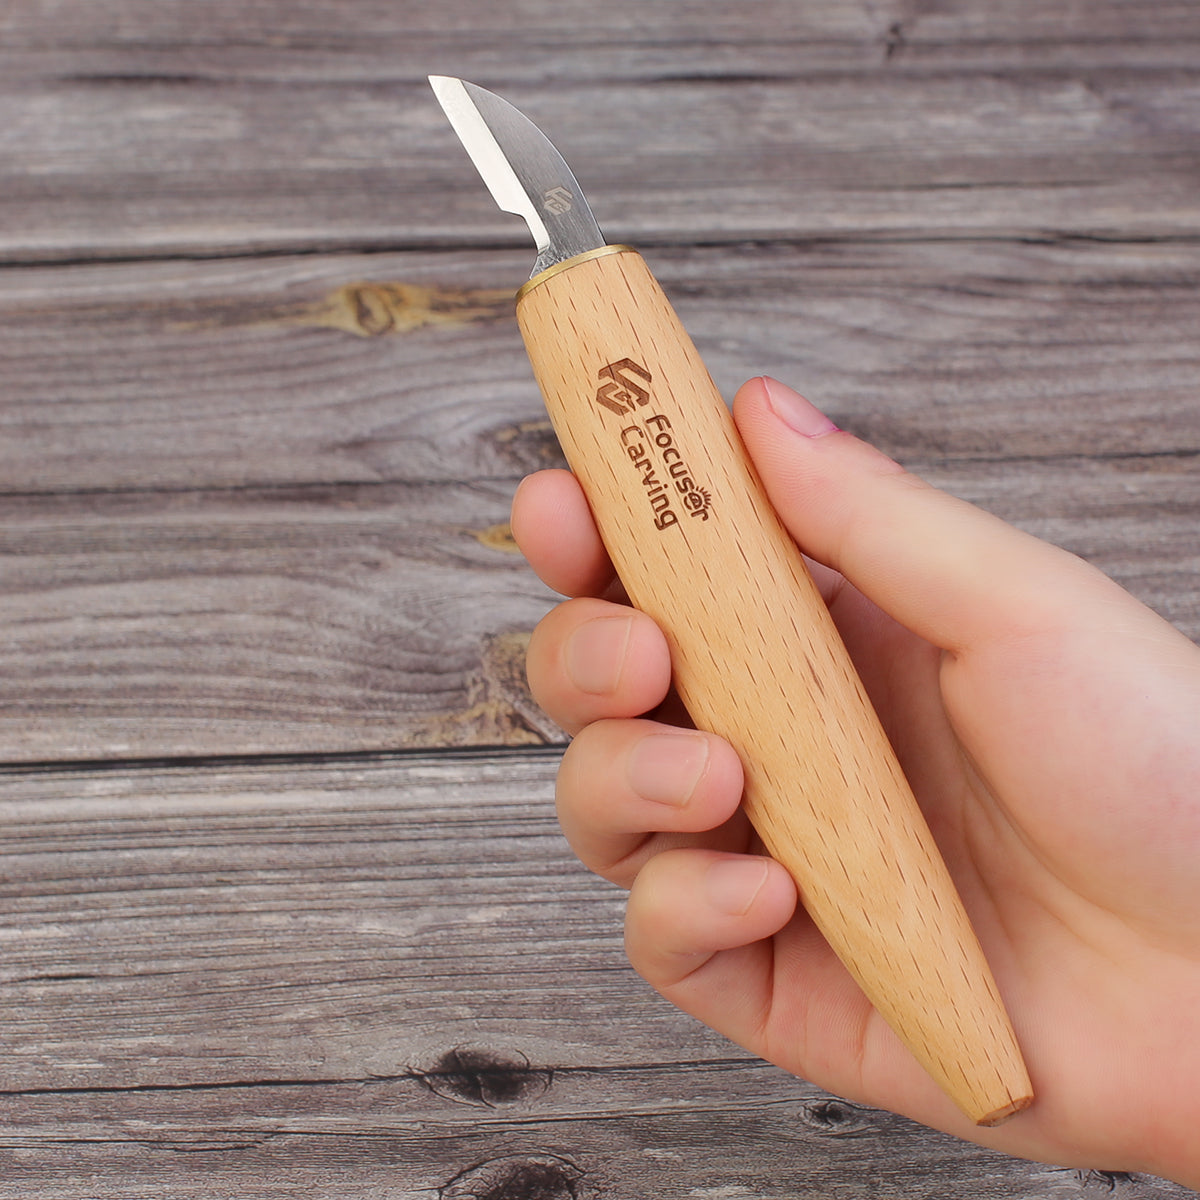 Detail Knife Model 1, Figure Carving Knife, Chip Carving Knife